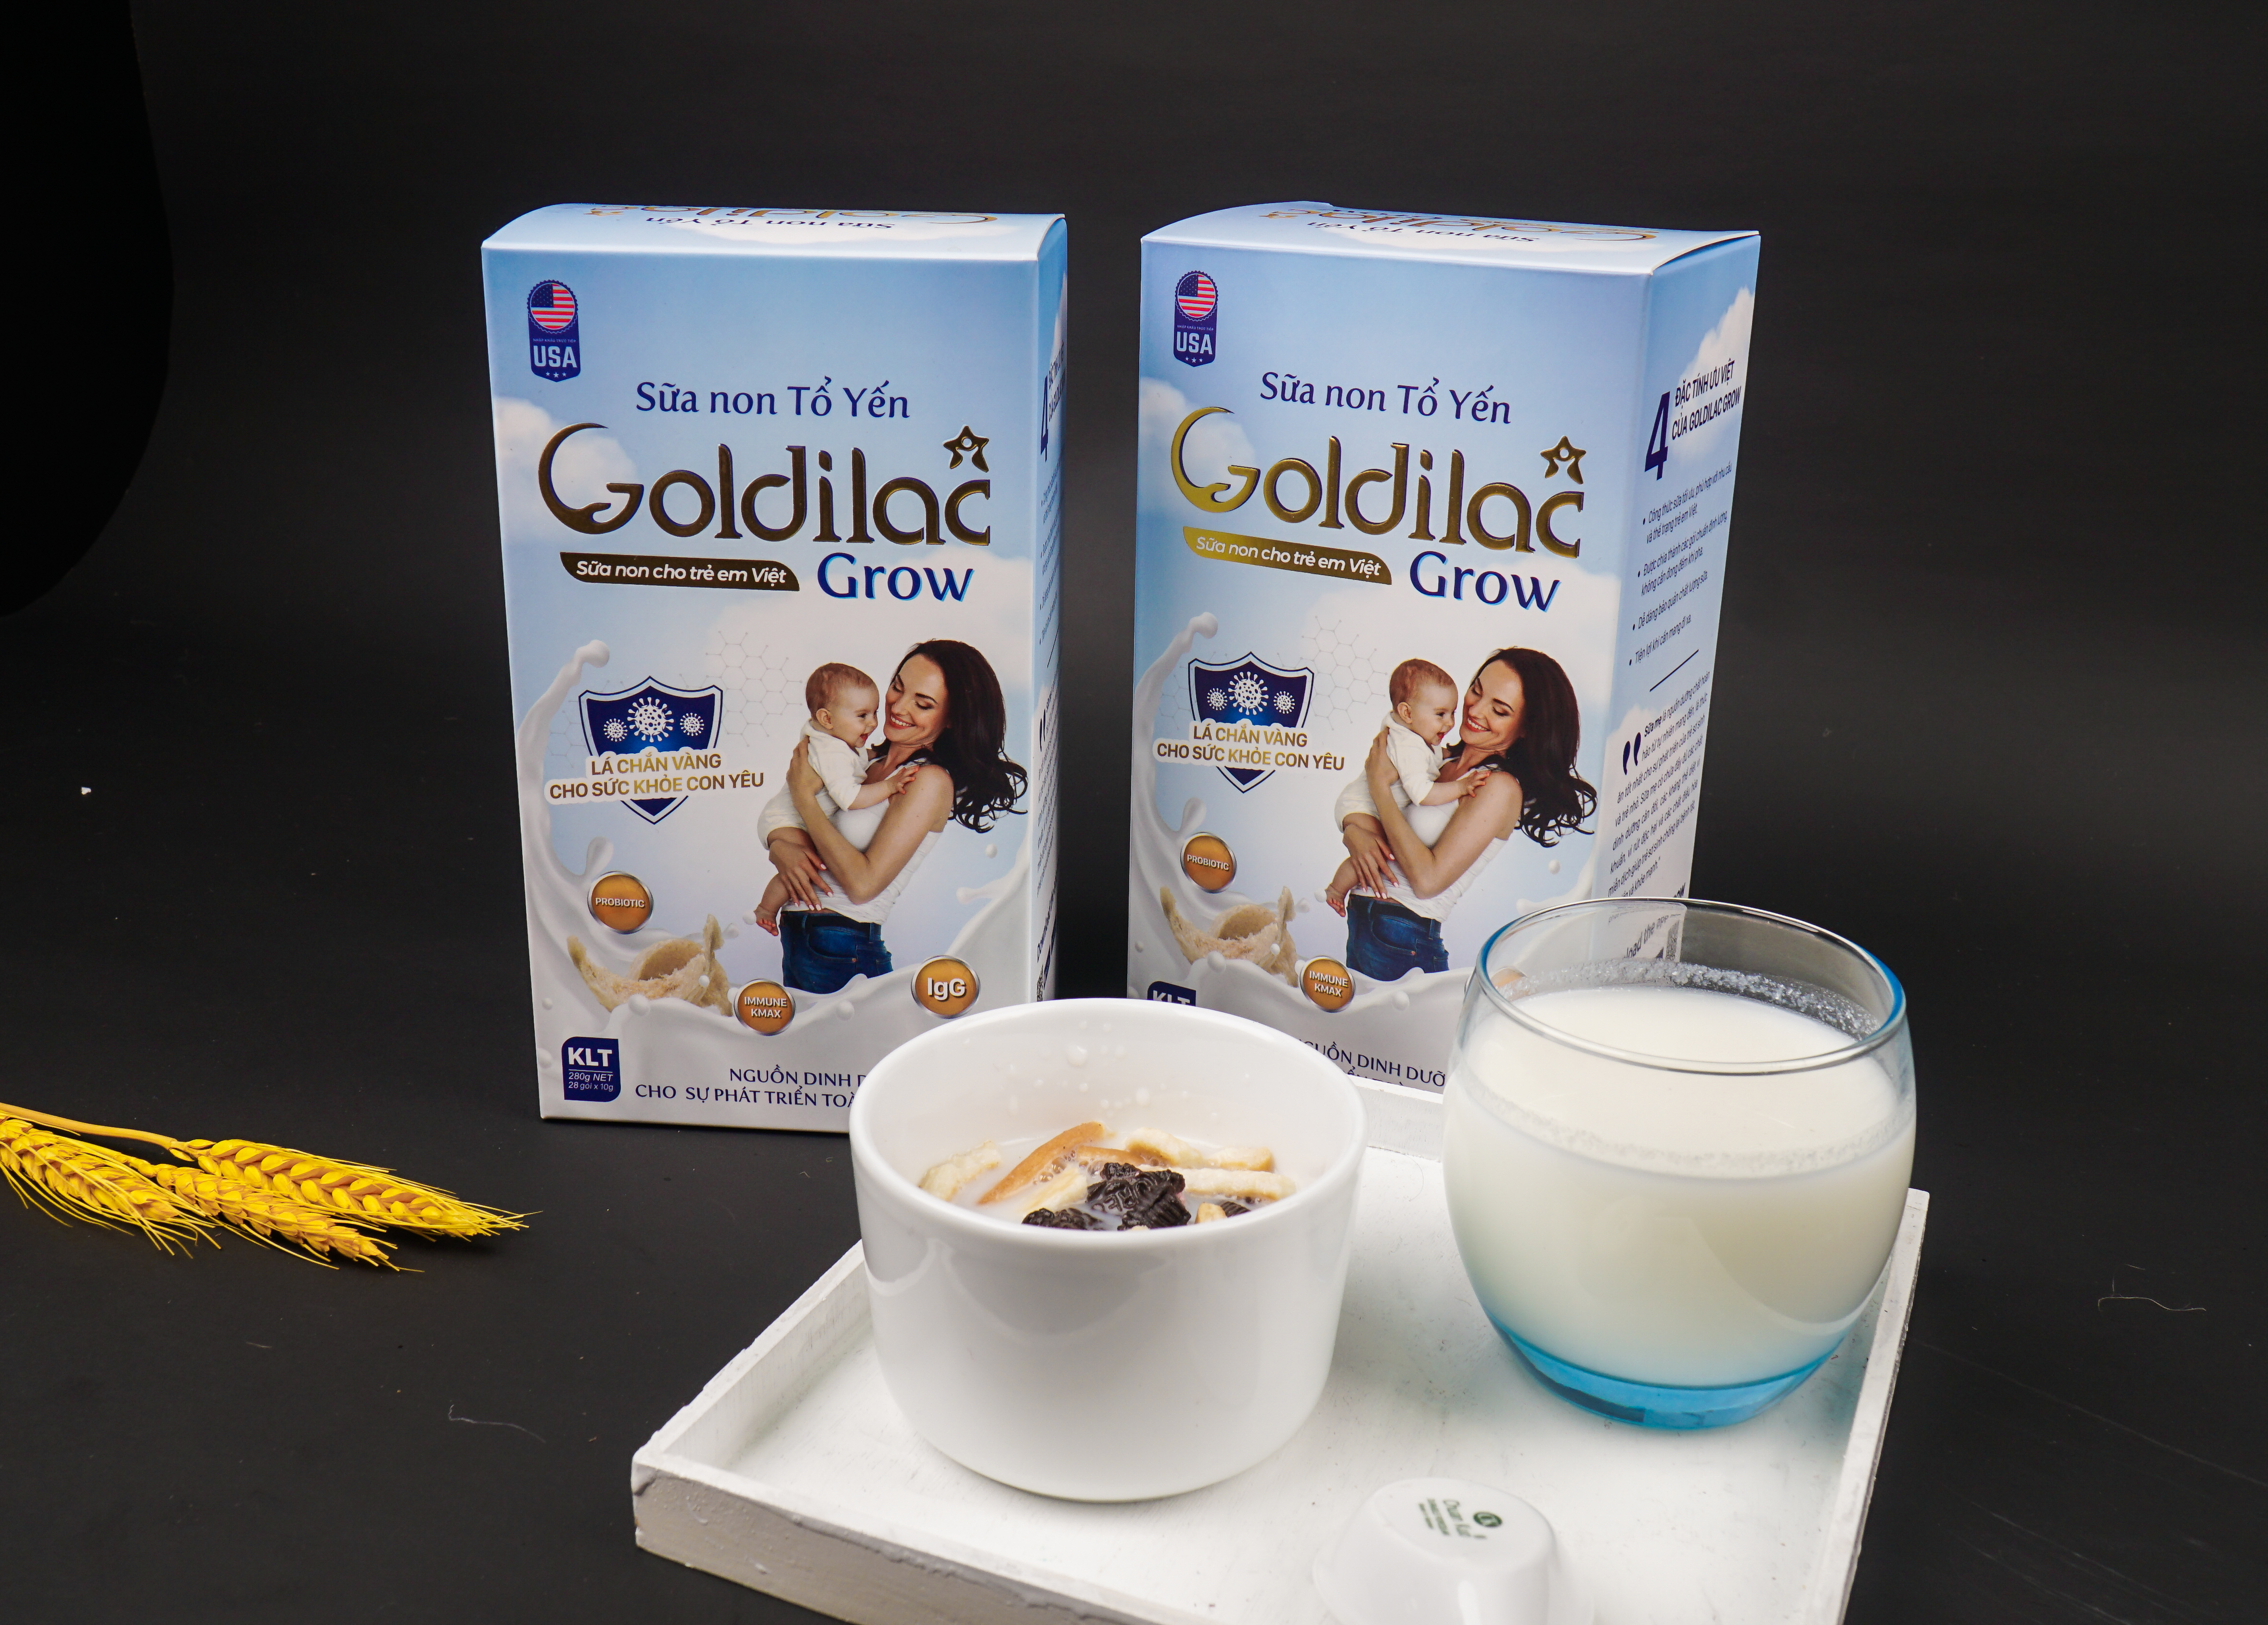 Sữa non tổ yến Goldilac Grow –&#160; Hỗ trợ tăng cường sức đề kh&#225;ng vượt trội cho sức khỏe con y&#234;u - Ảnh 3